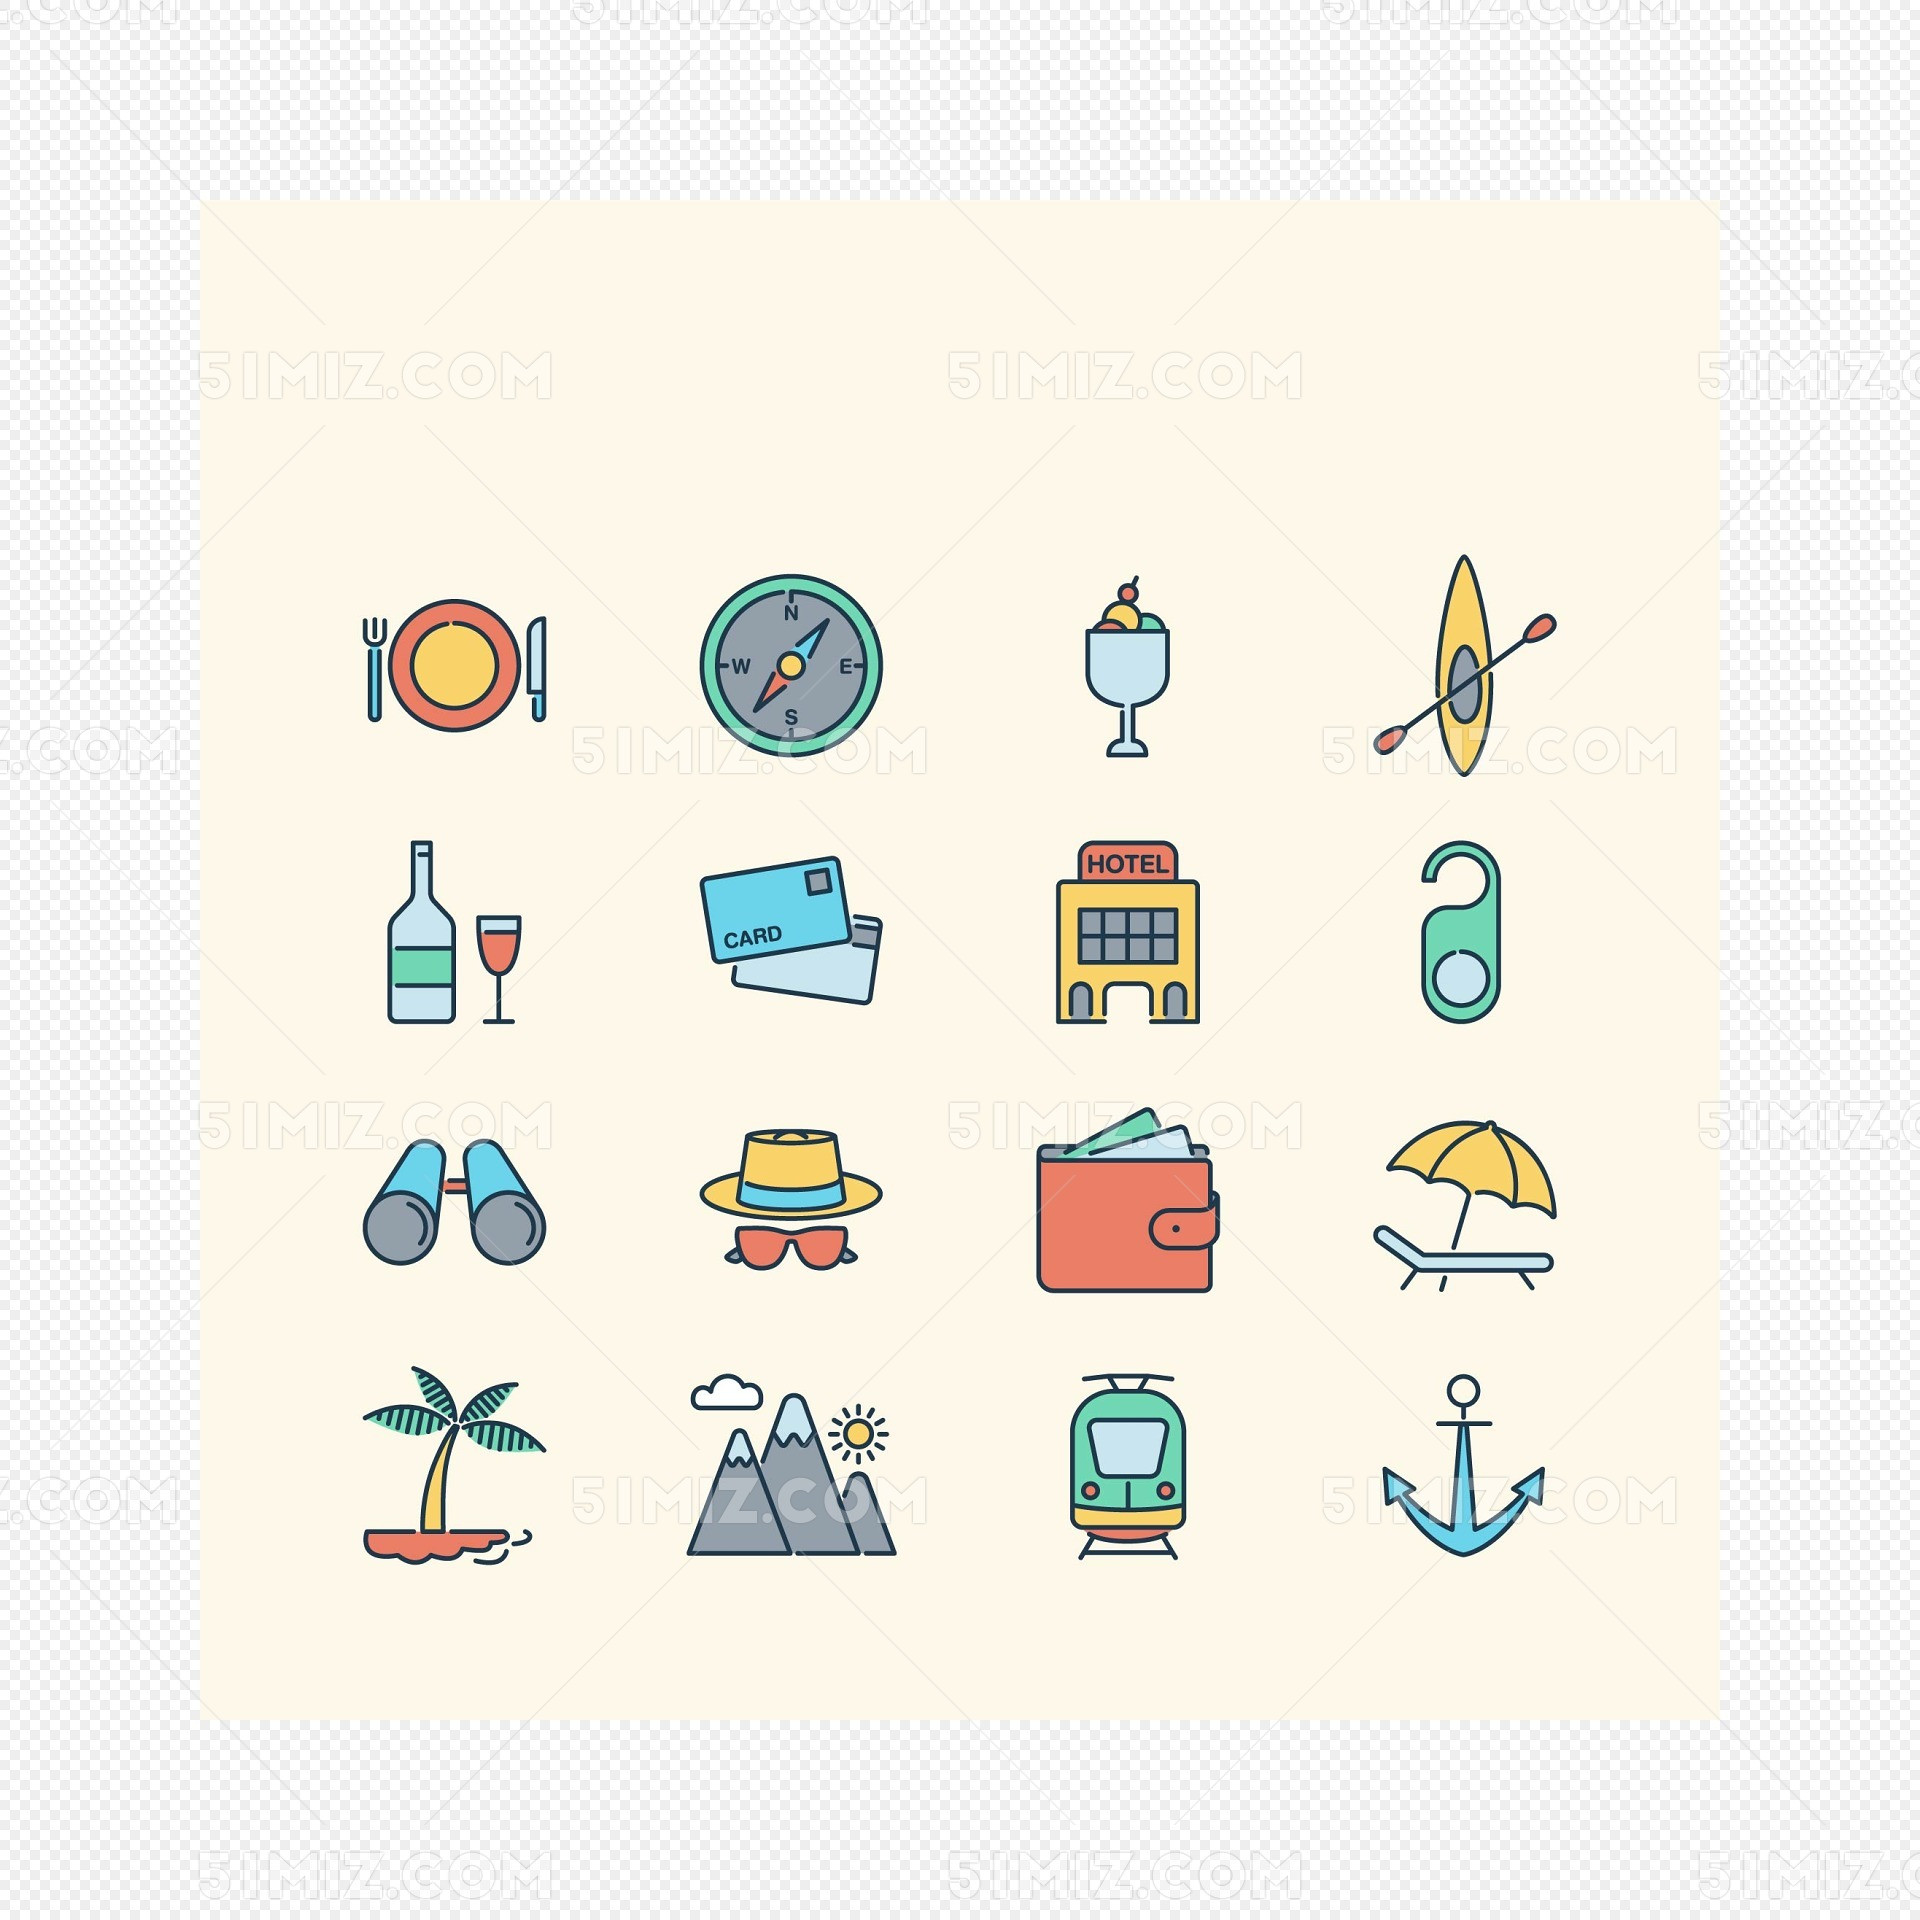 简单彩色休闲旅行图标素材